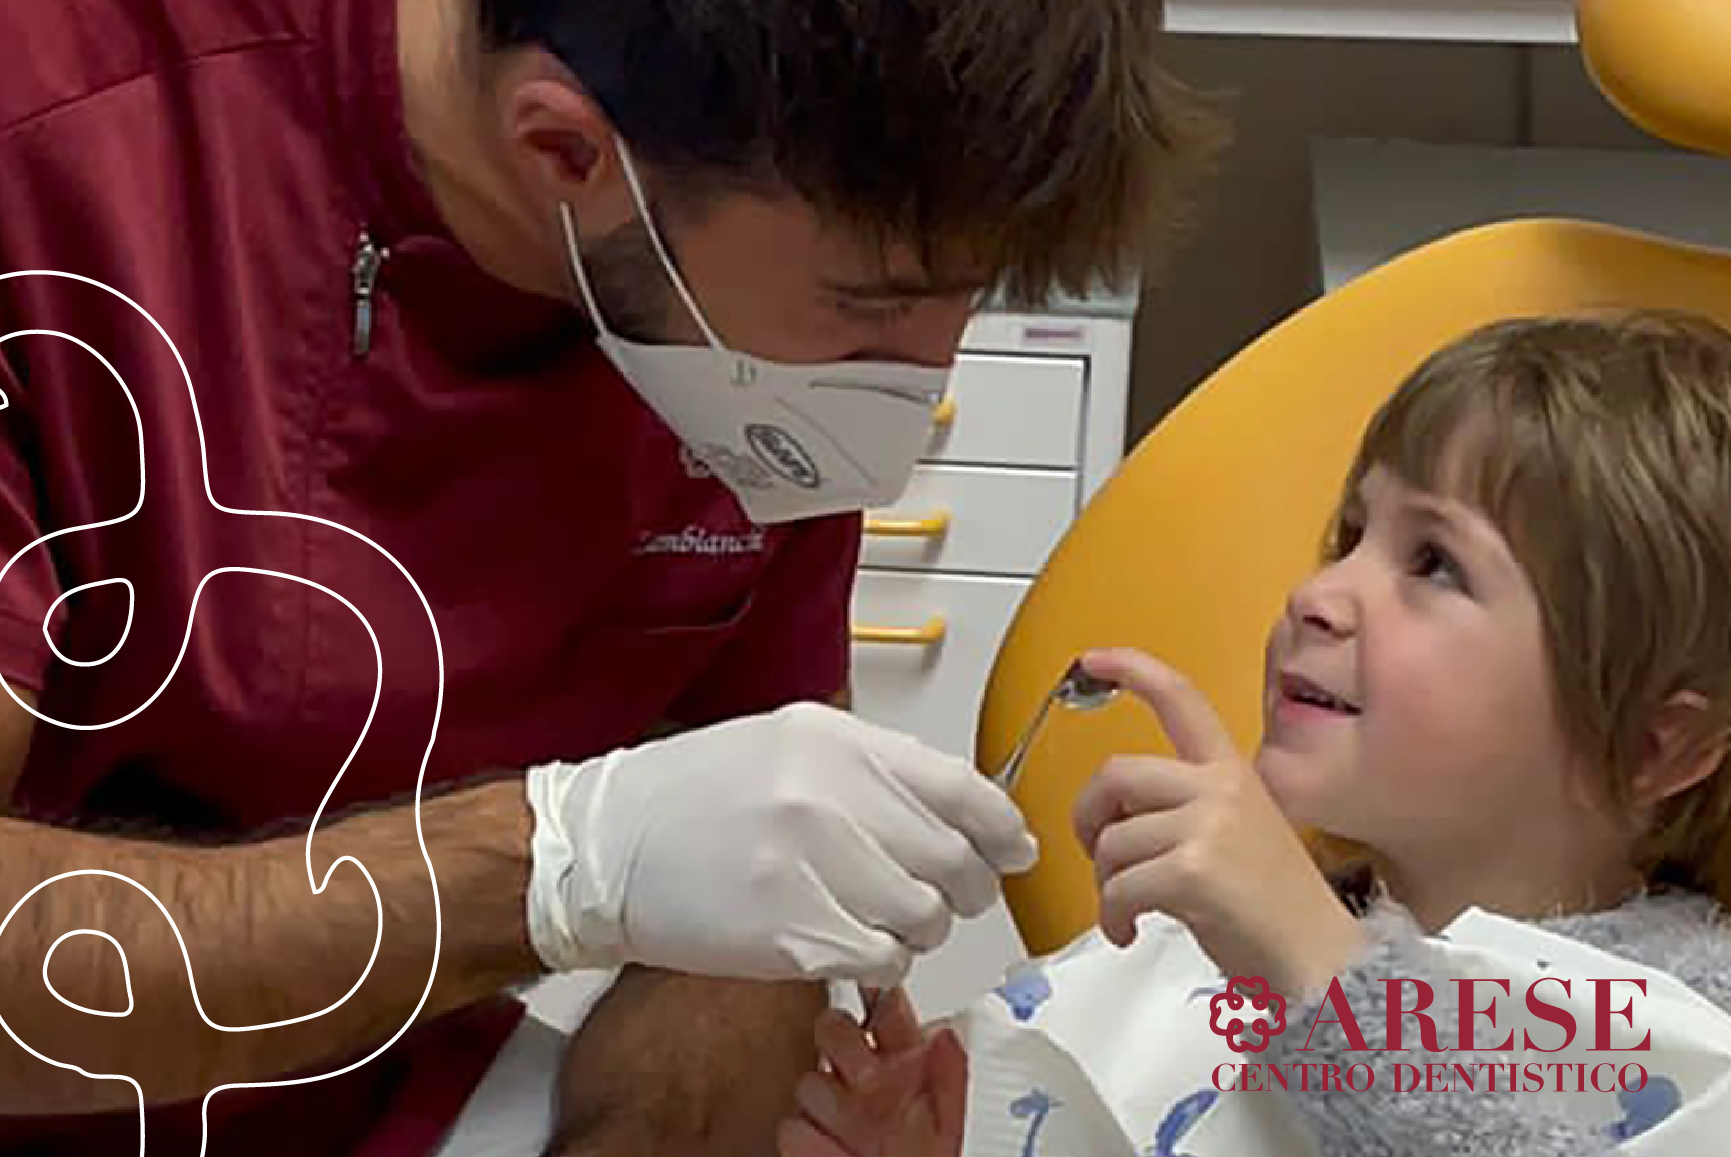 Apparecchio denti per bambini - Centro Dentistico Arese